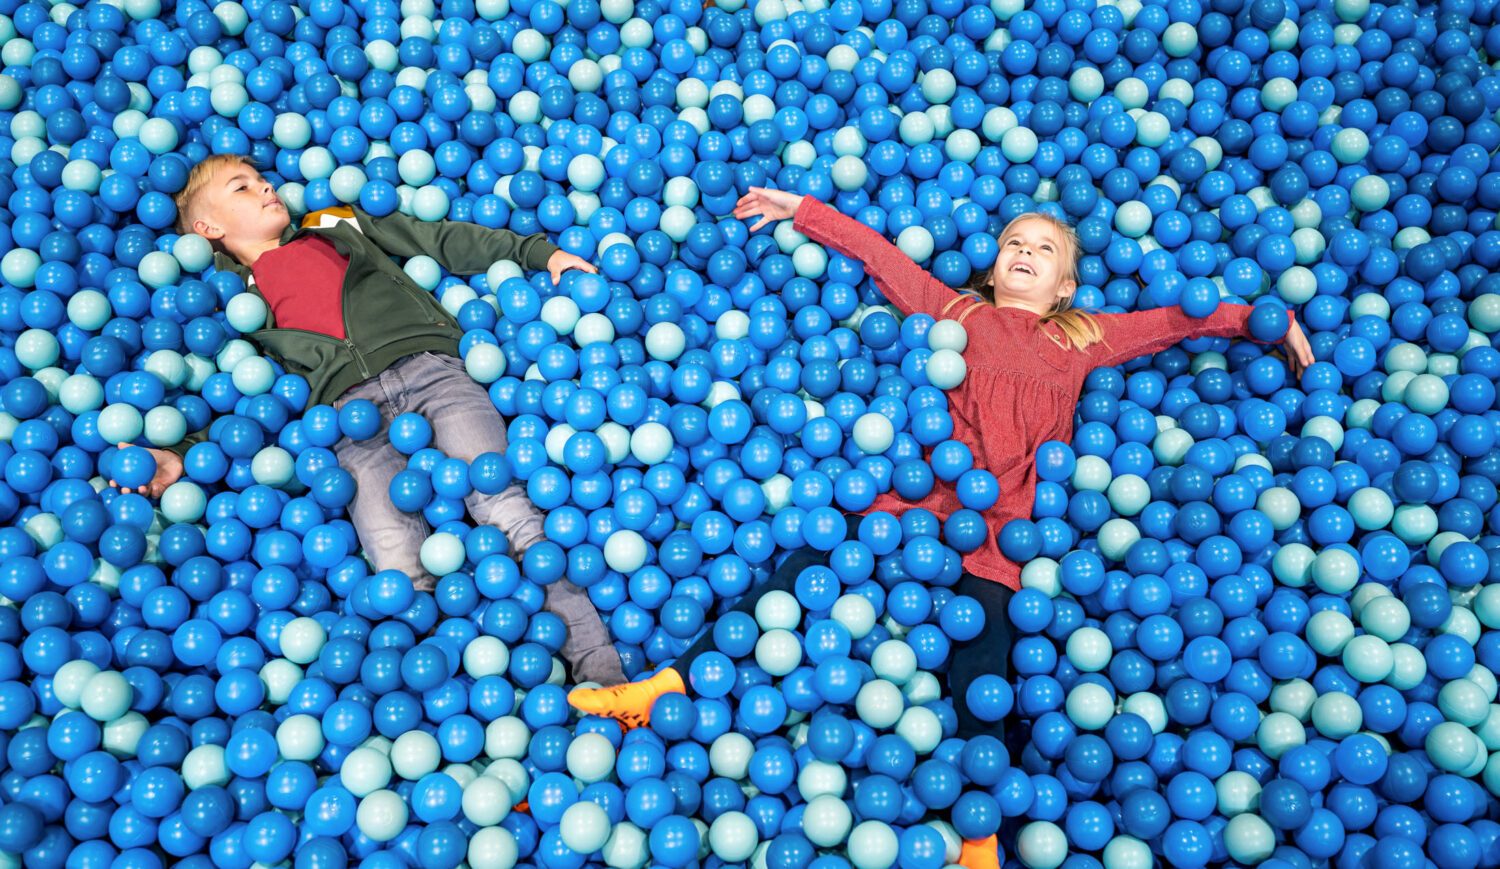 Relaxing in the sea of balls - even little Vikings need a break © TMV/Tiemann